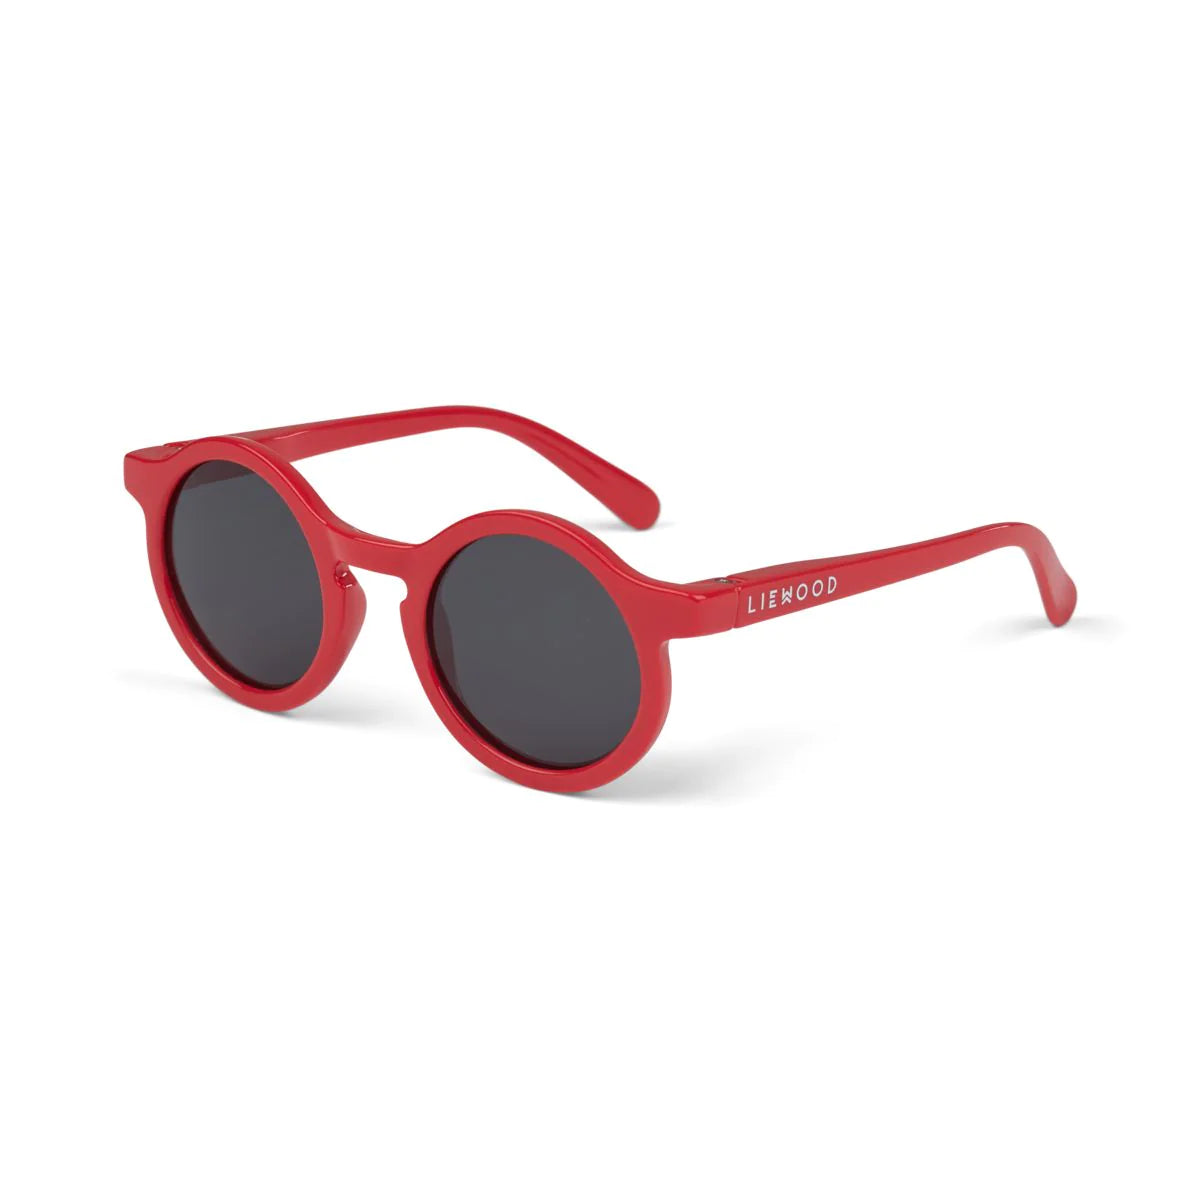 Darla sunglasses (4-10Y)